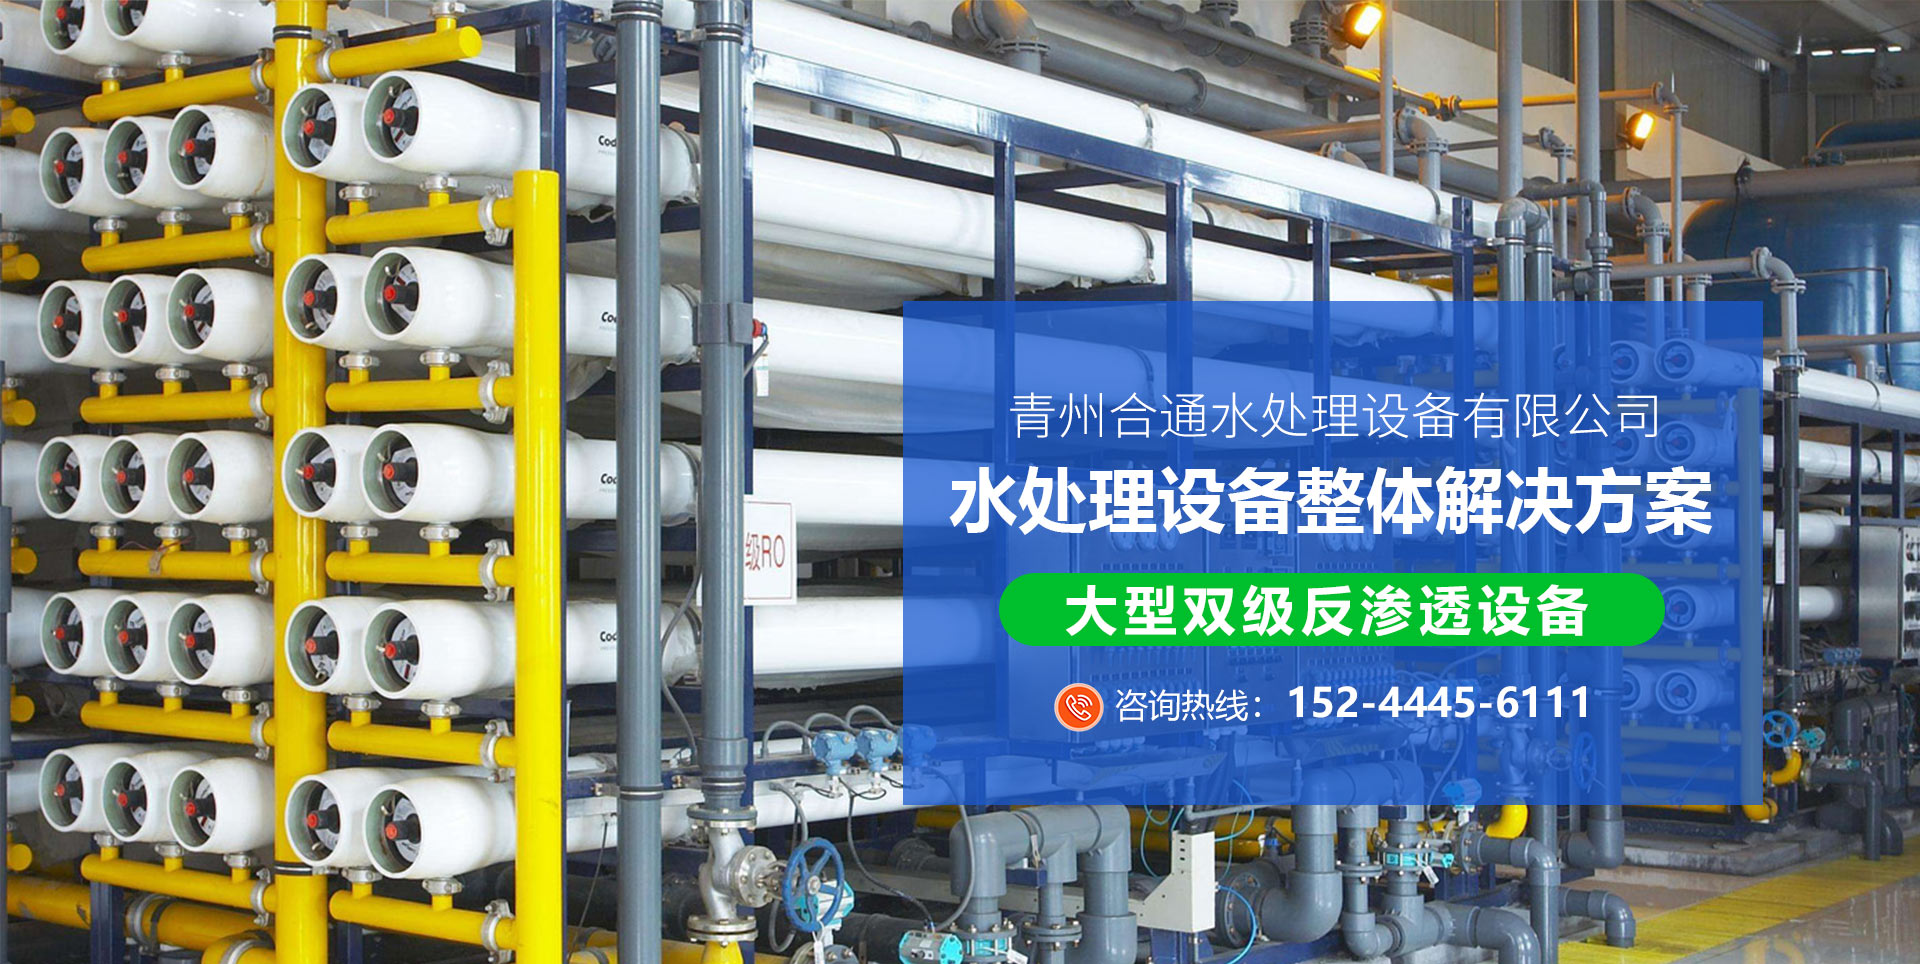 青州合通水处理设备有限公司